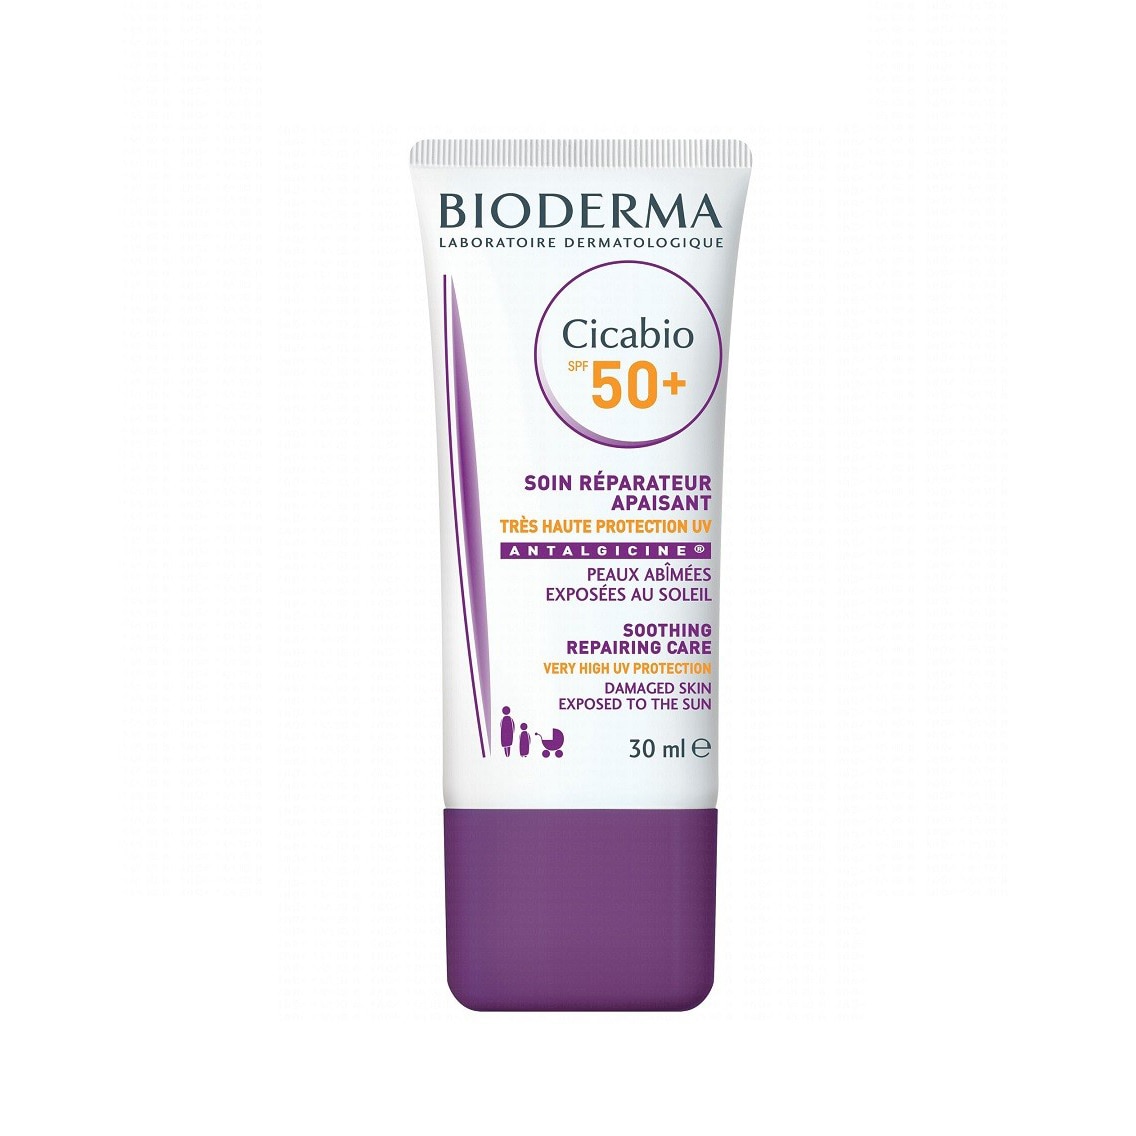 Piele sensibila - Bioderma Cicabio Crema Spf50+  30 ml, farmacieieftina.ro